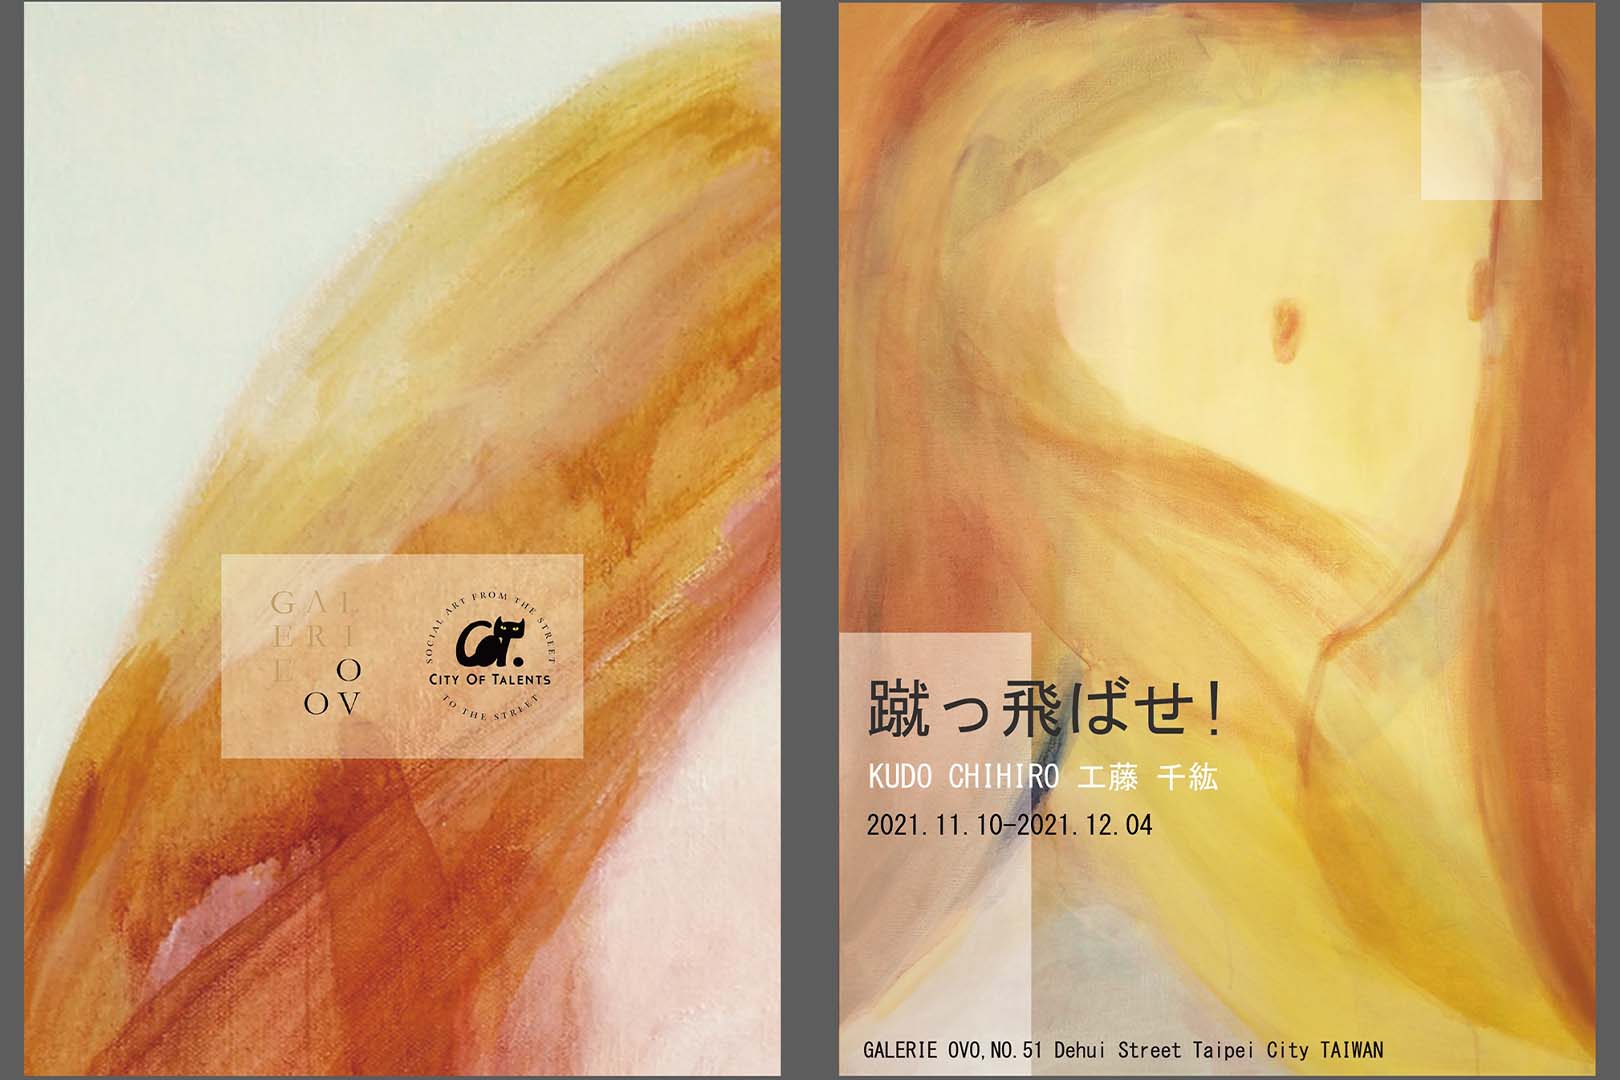 【蹴っ飛ばせ! 】KUDO CHIHIRO 工藤 千紘 solo exhibition